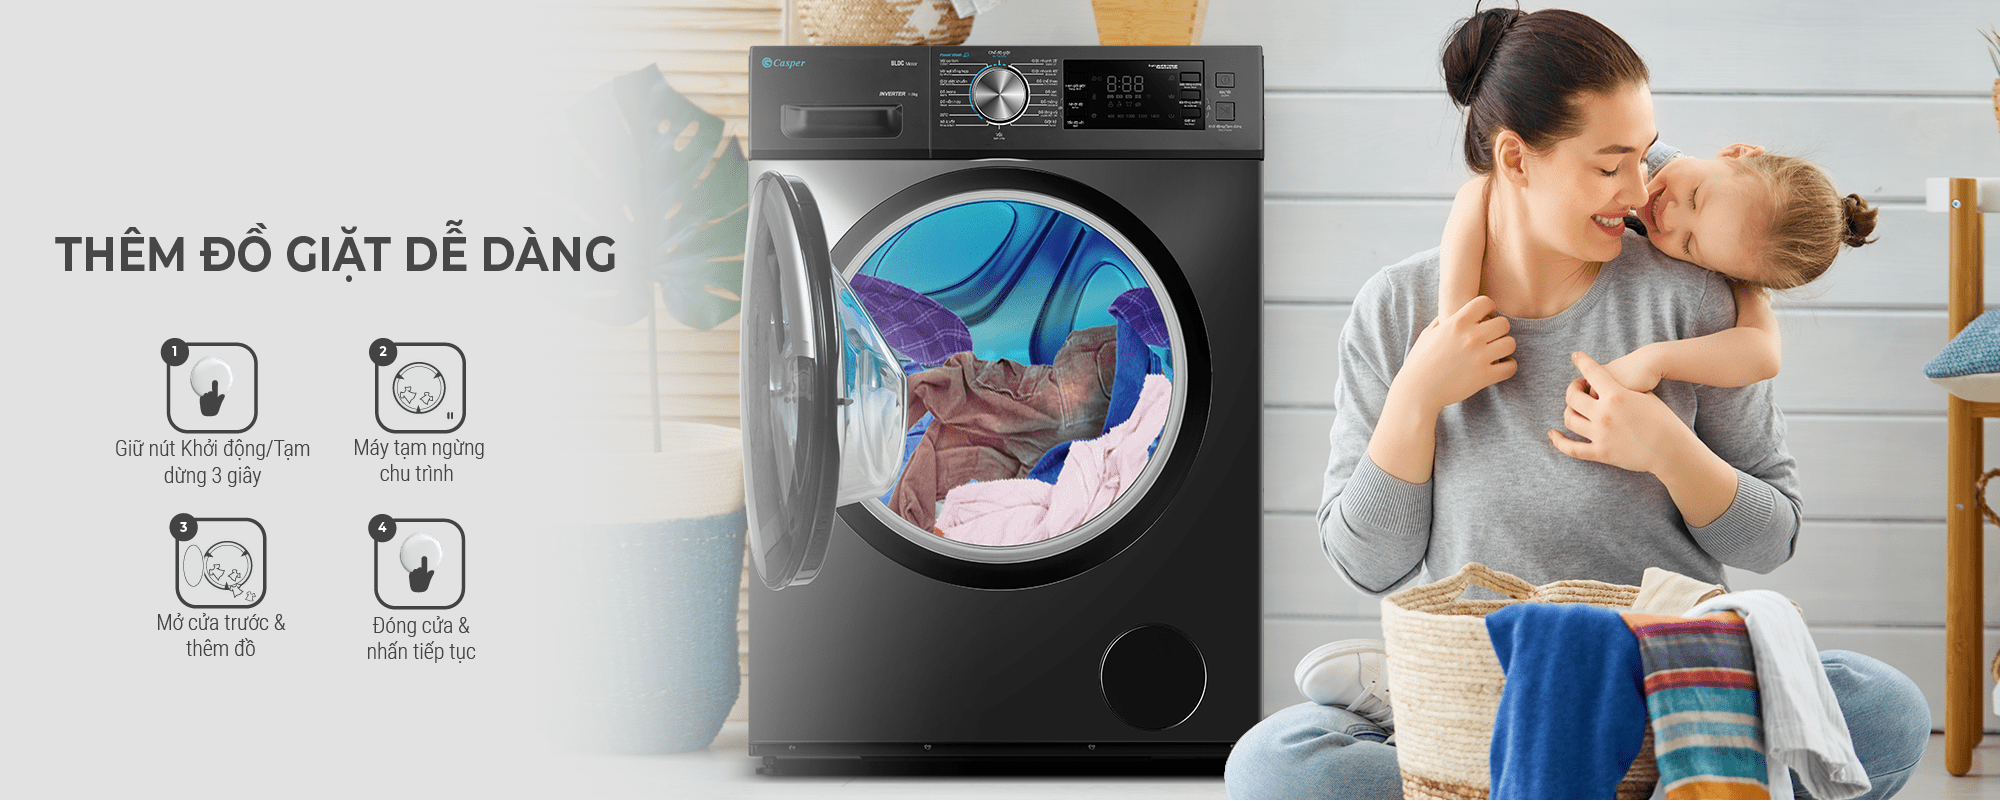 8. Tính năng thêm đồ giặt trong khi đang giặt tiện ích